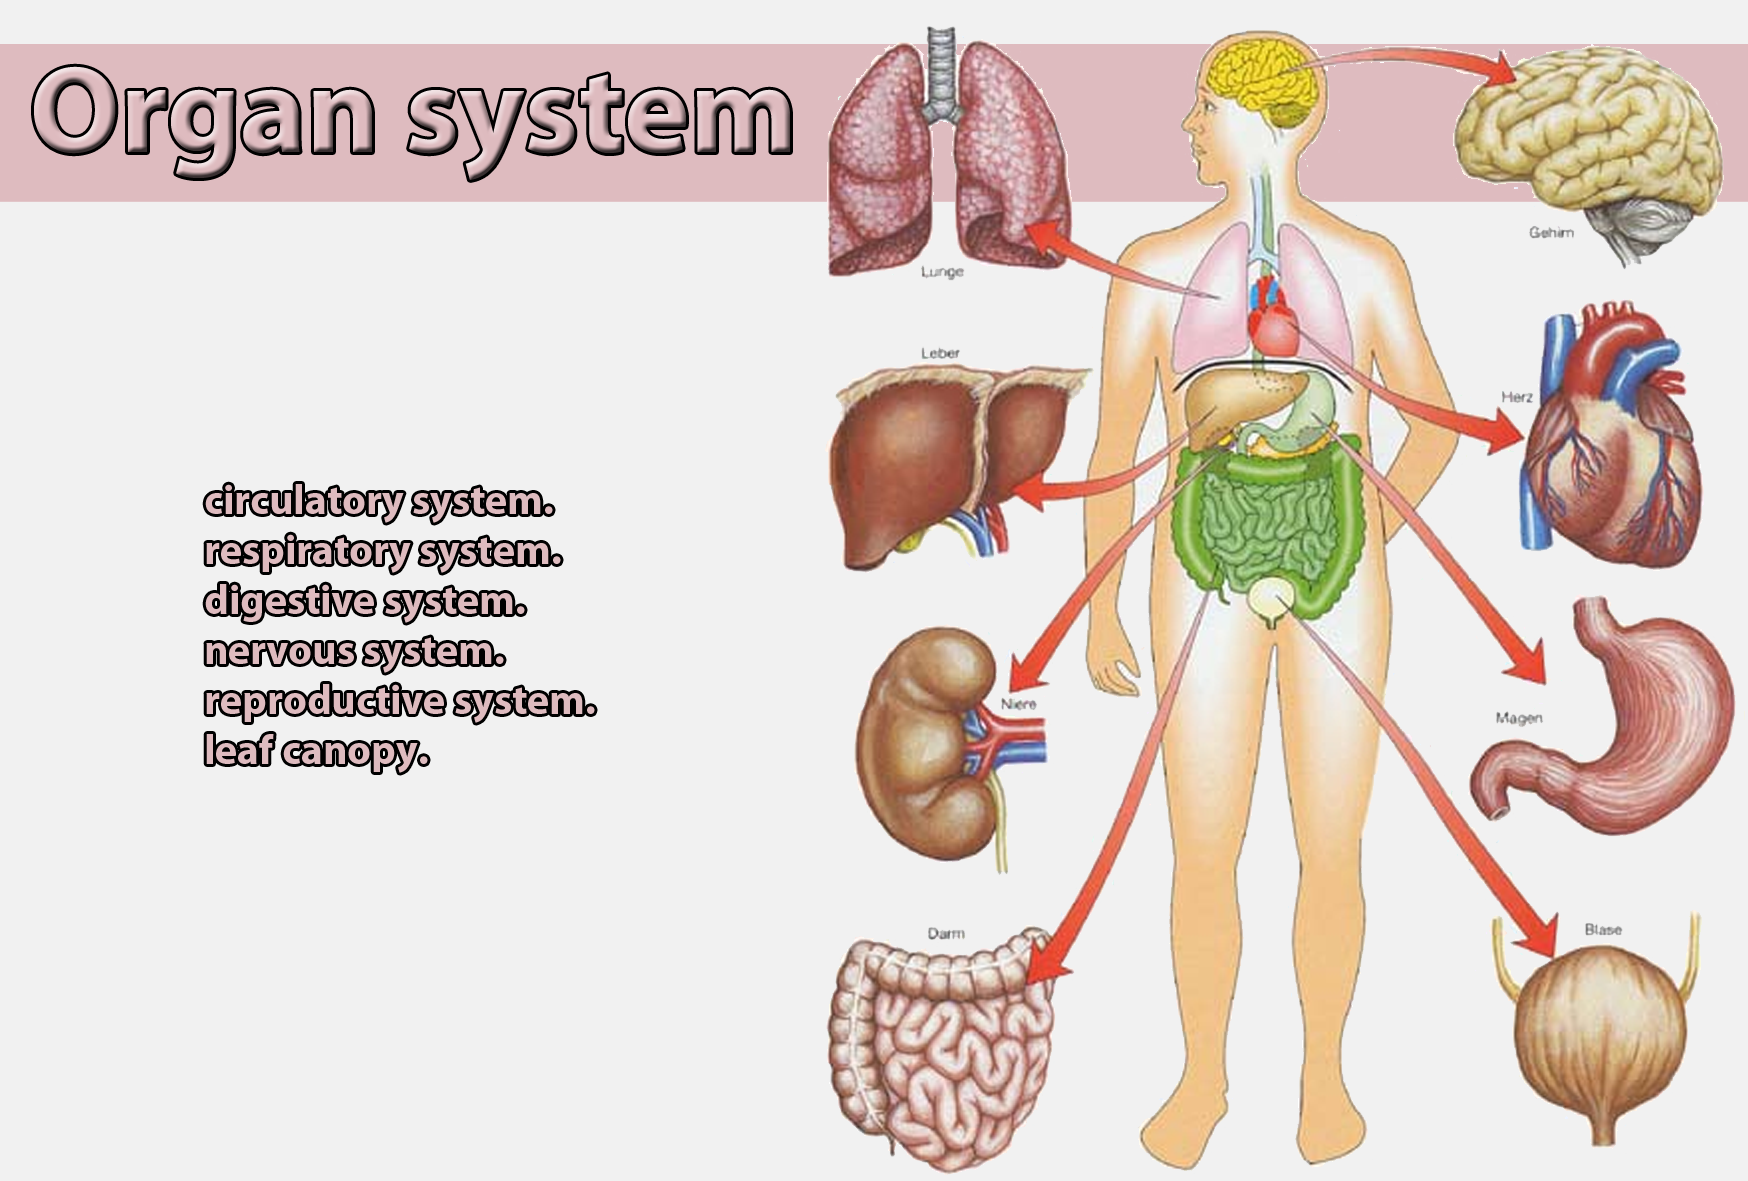 Изображения систем органов человека. Органы человека для детей. Системы органов. Органы и системы органов человека. Внутренние органы для детей.